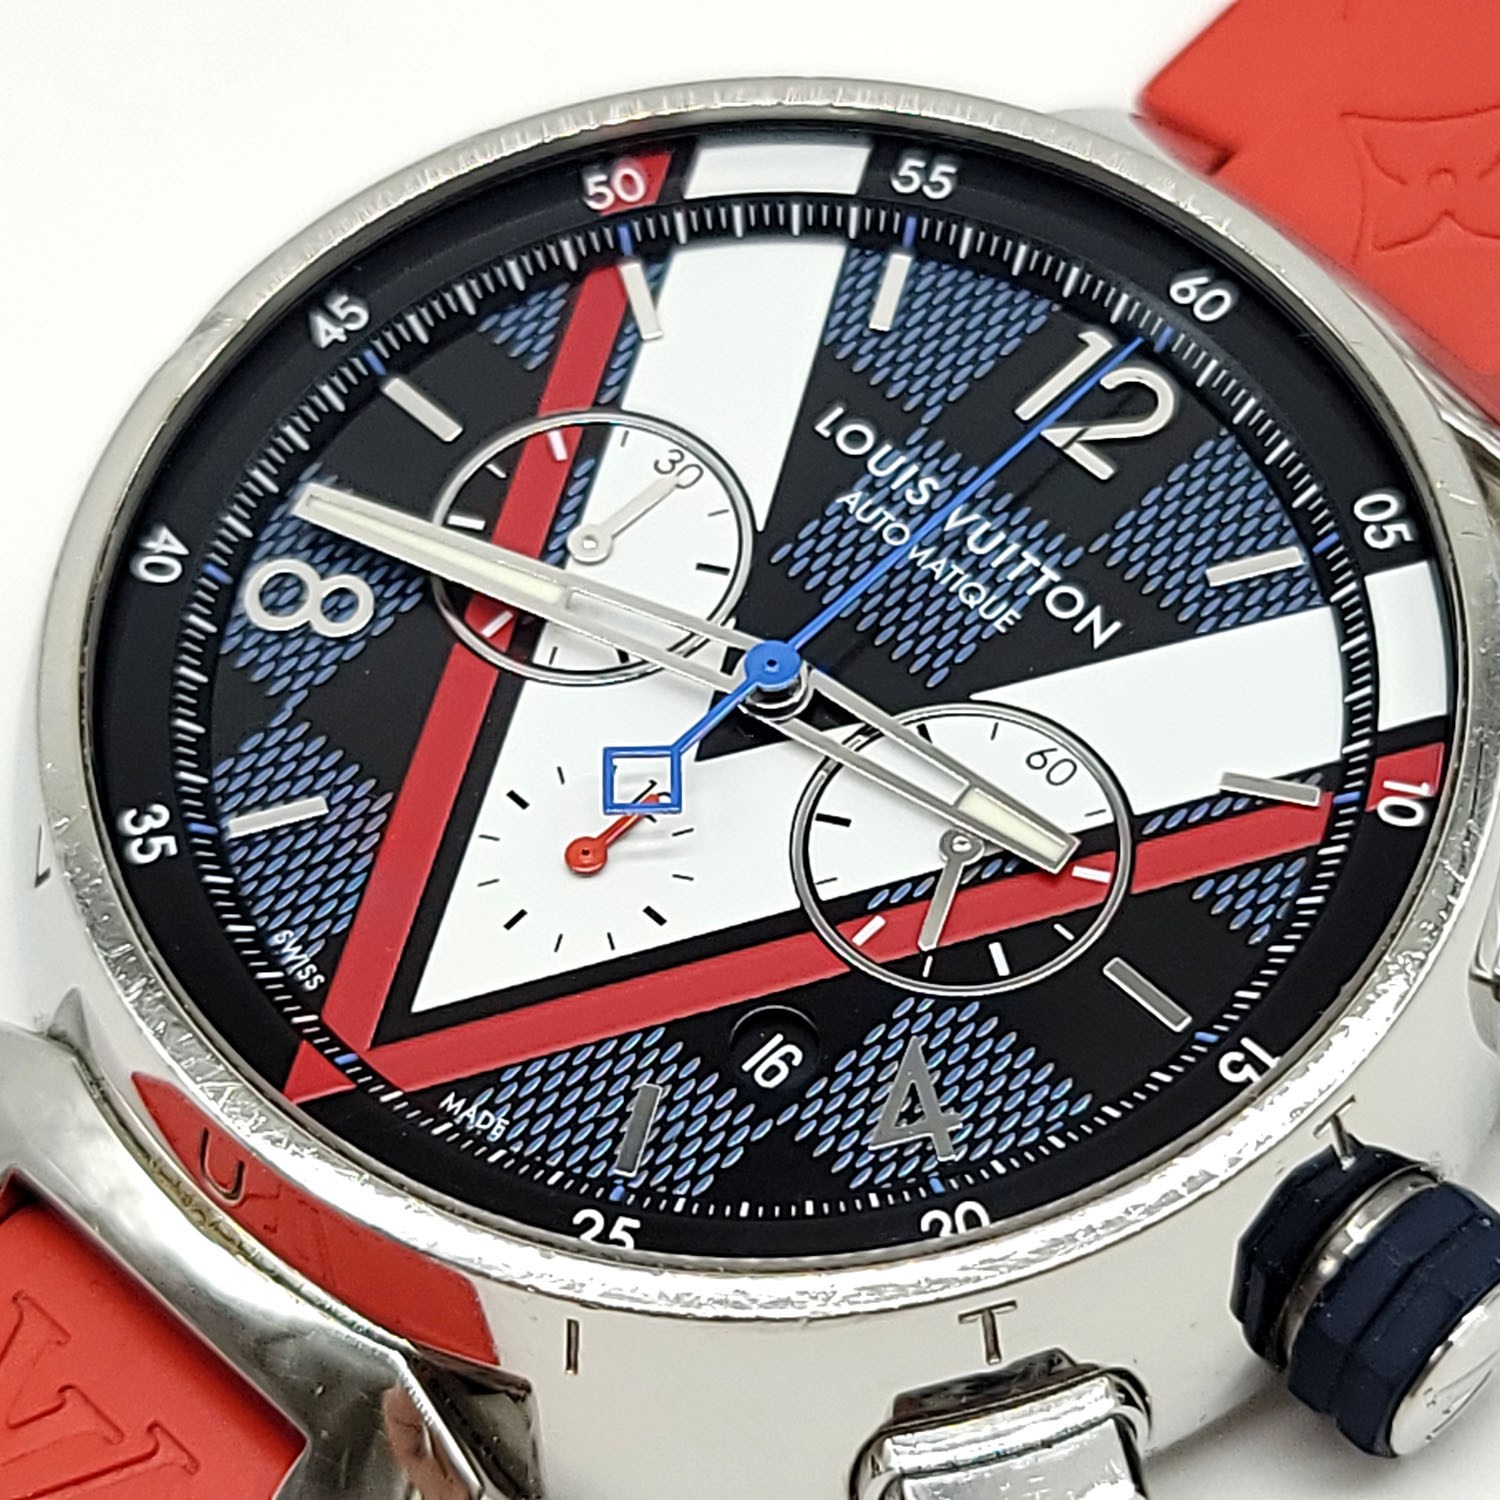 Louis Vuitton Tambour Damier Cobalt 46 Automatic Chronograph Watch